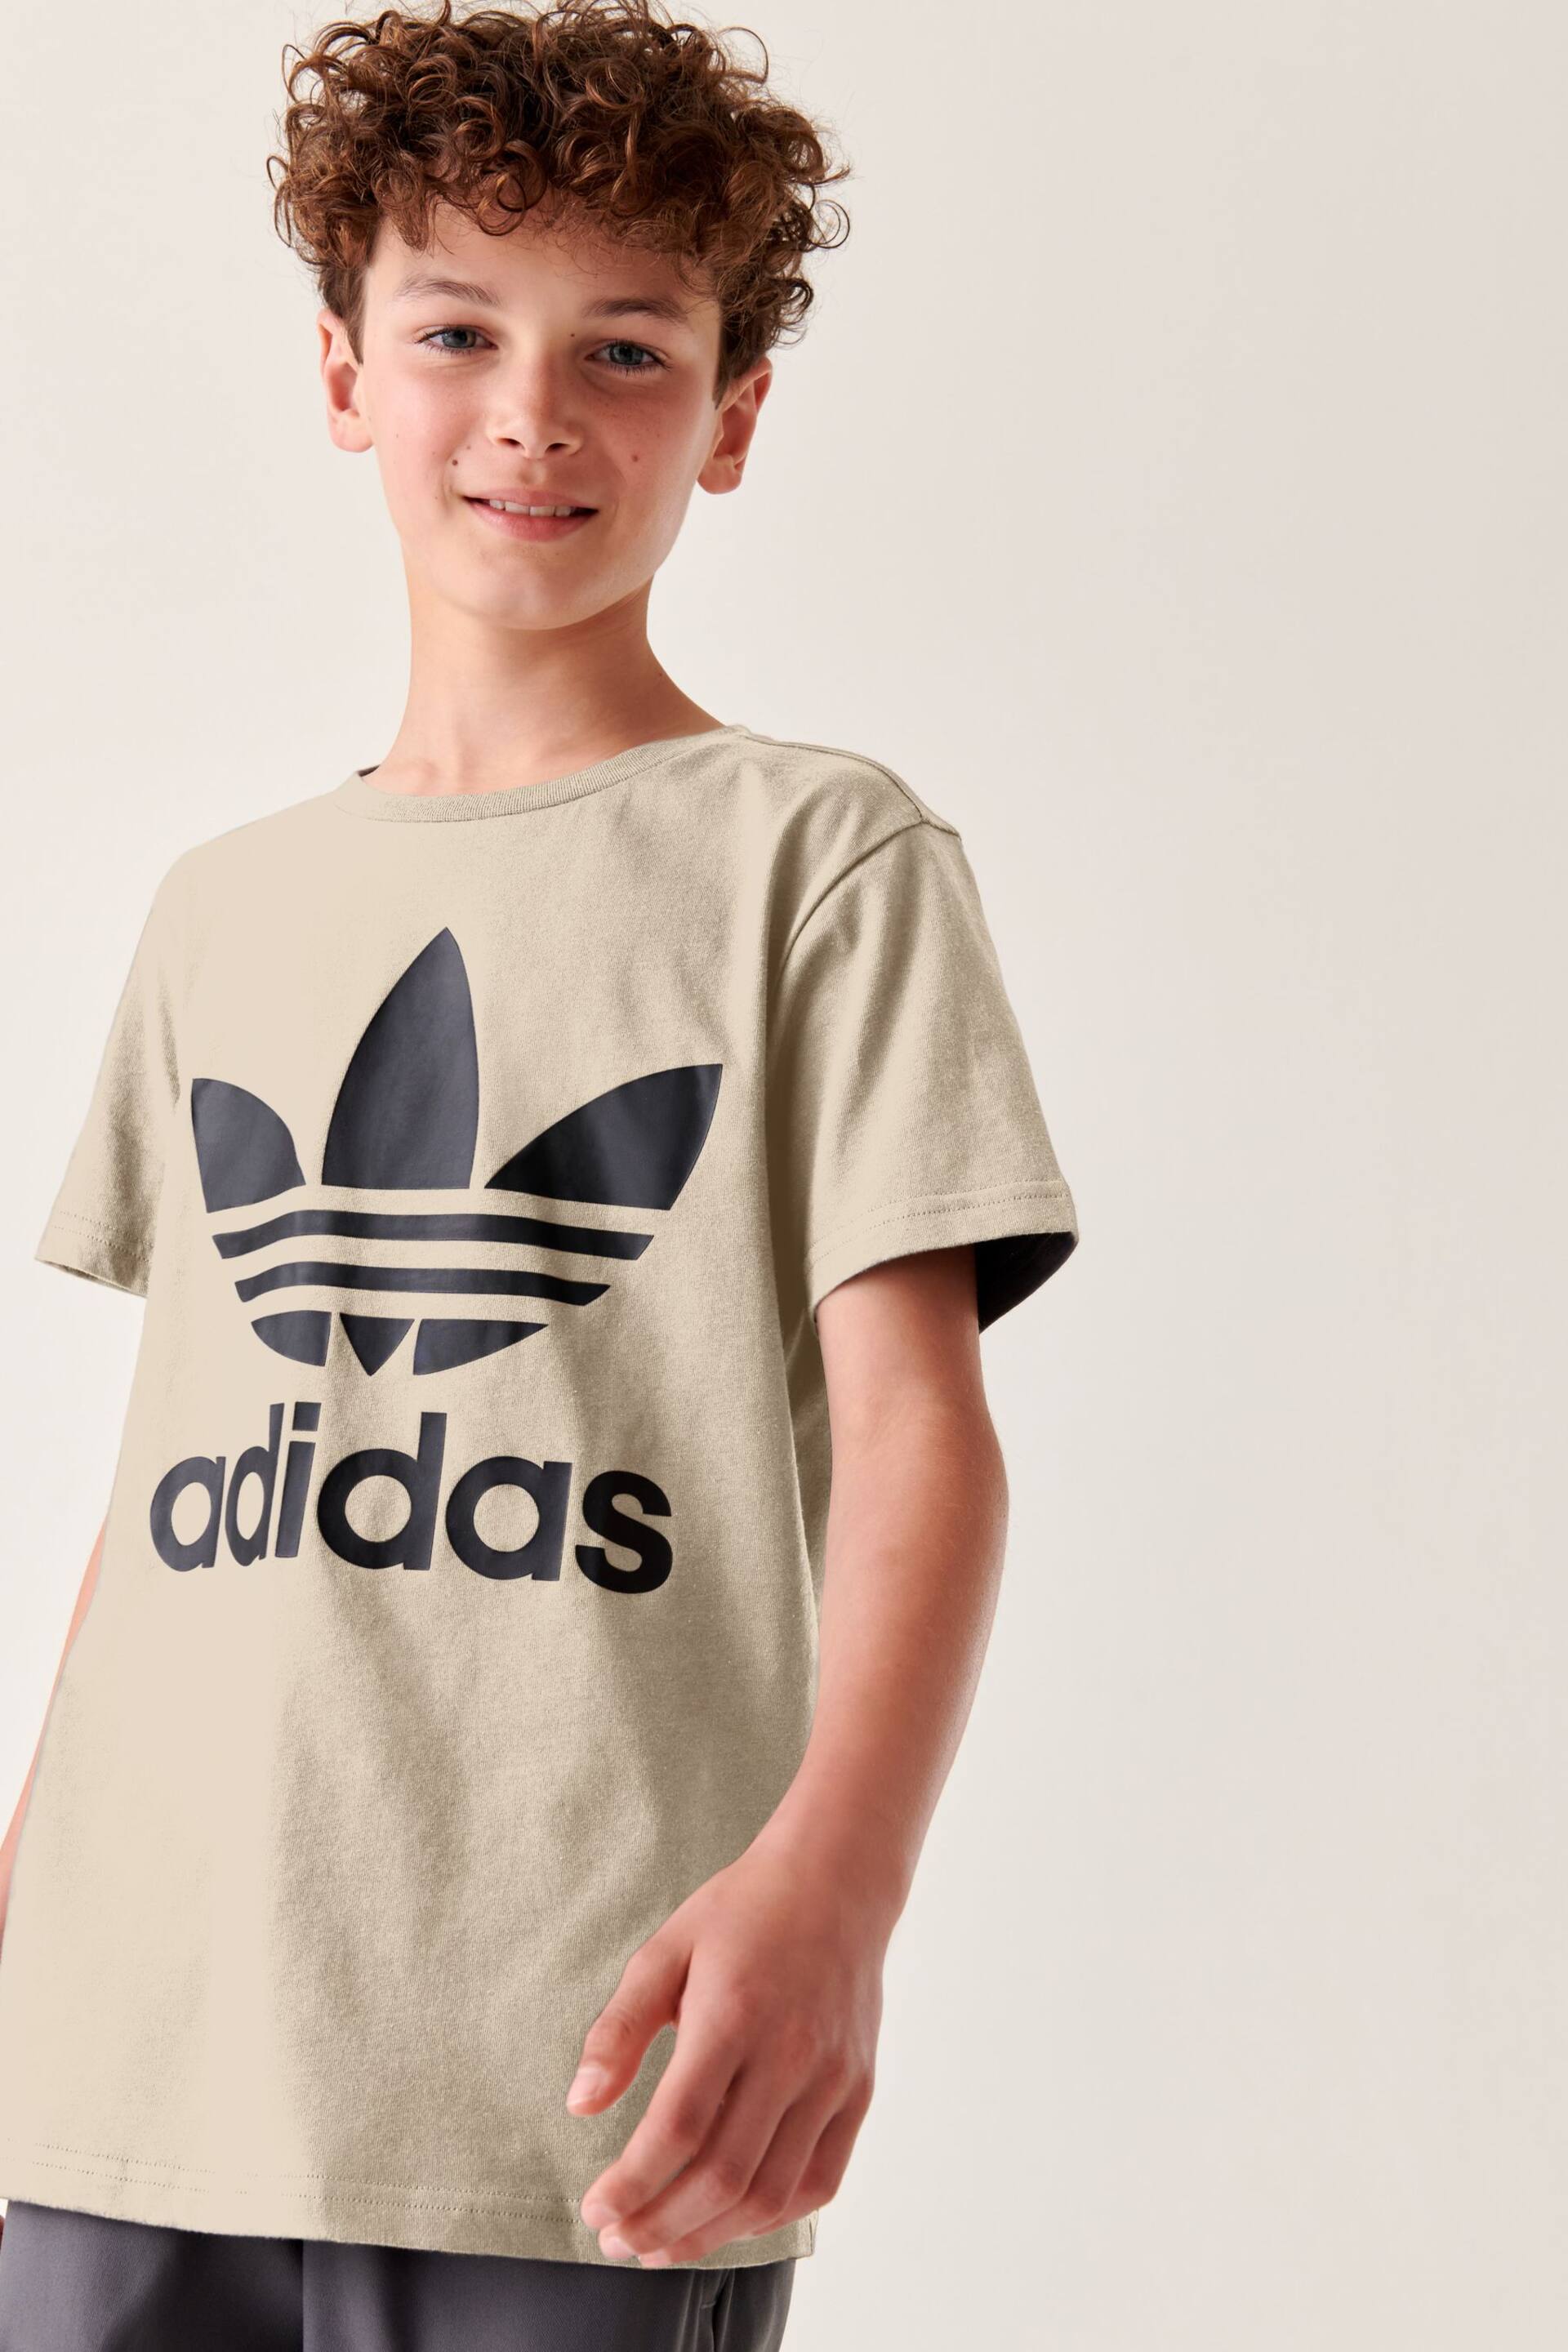 adidas Originals 3-Stripes T-Shirt - Image 1 of 6